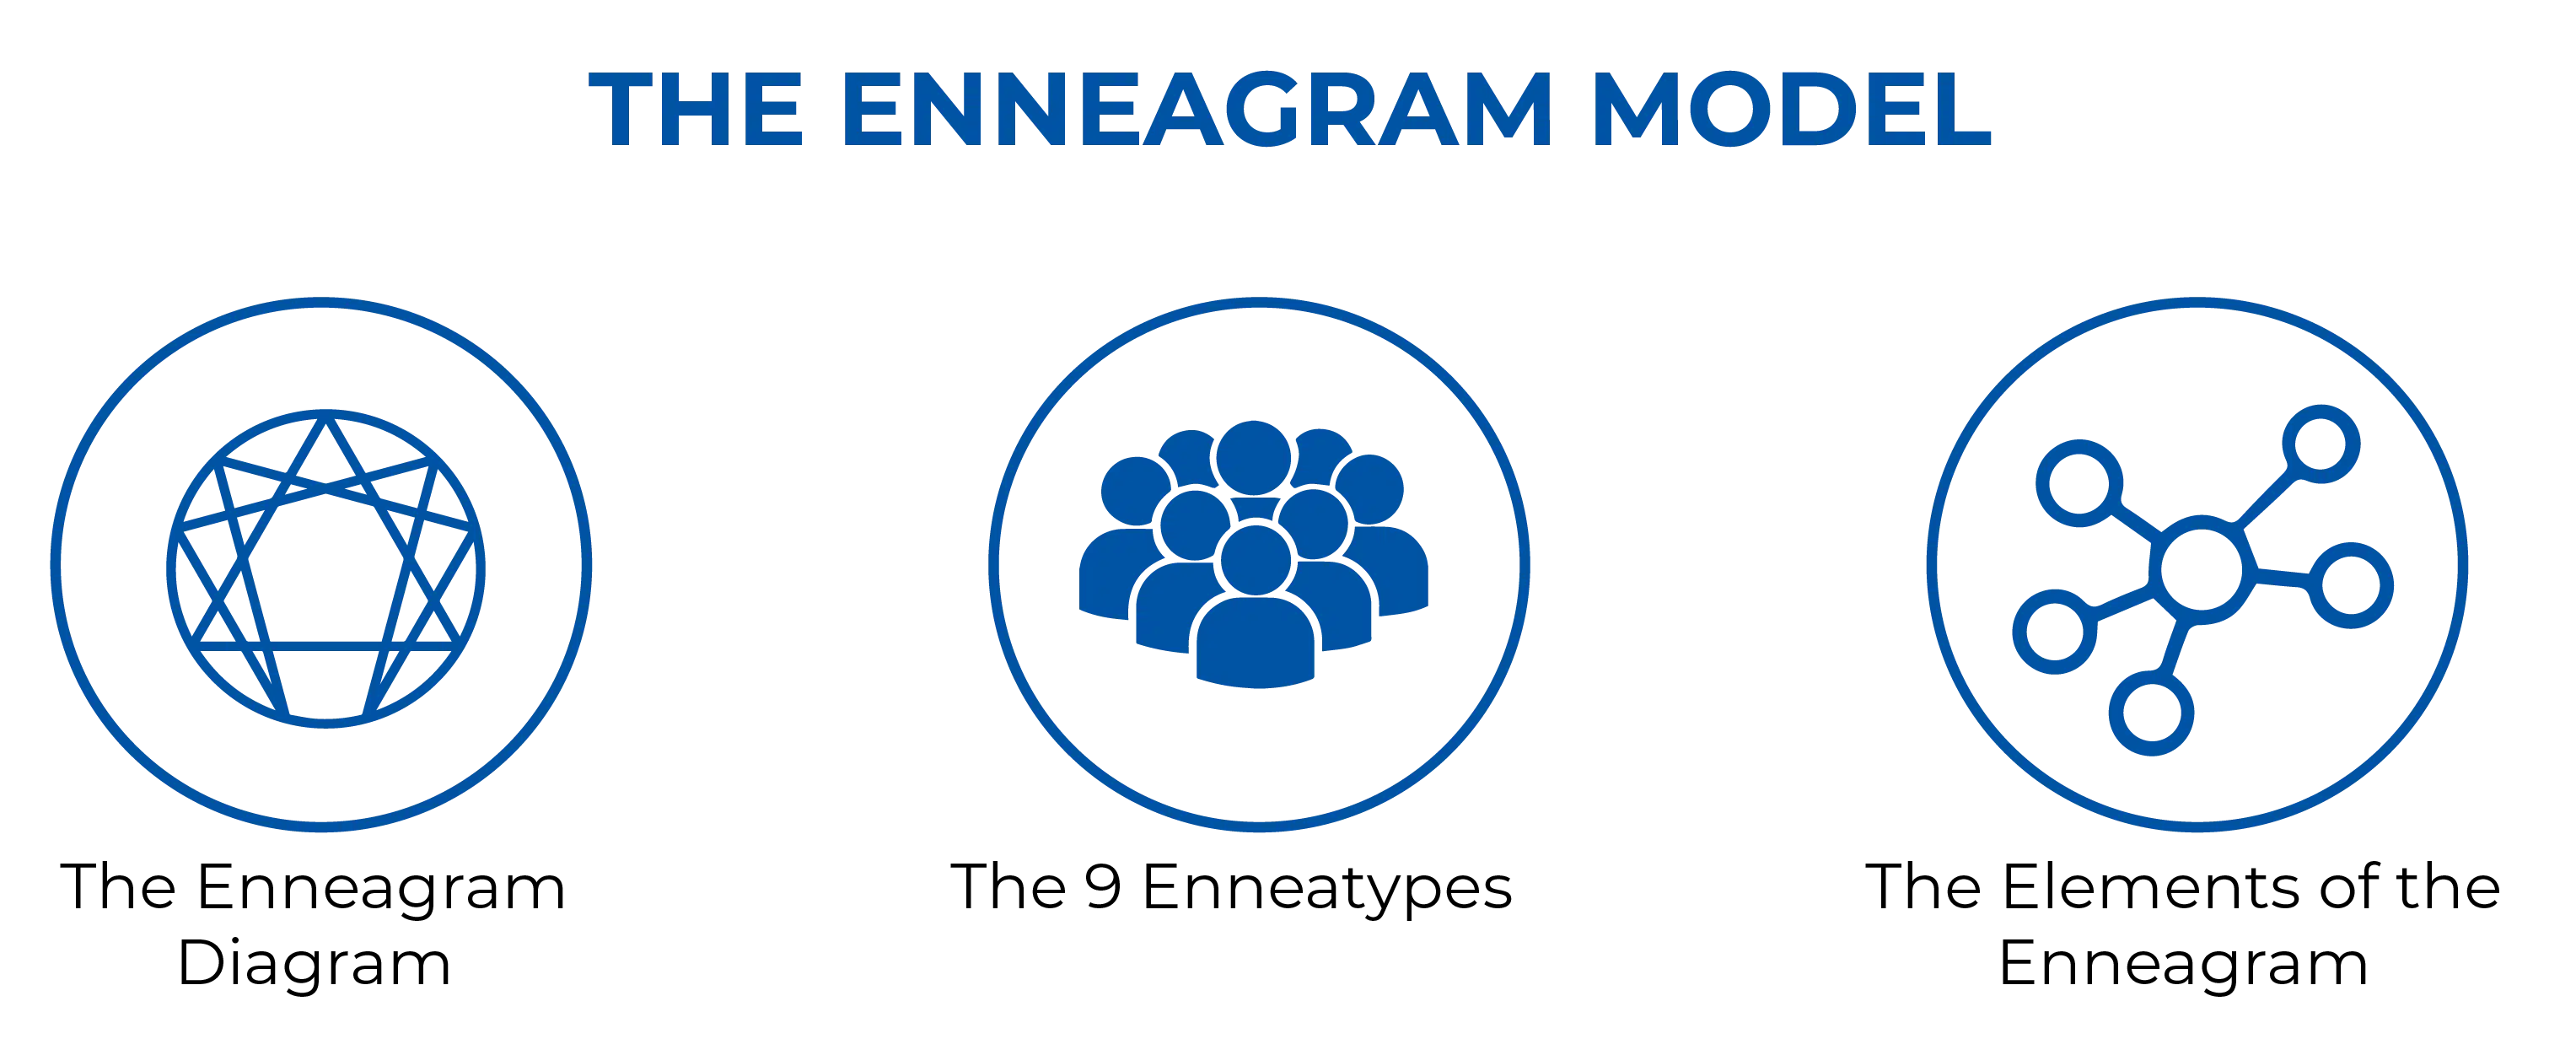 THE ENNEAGRAM MODEL